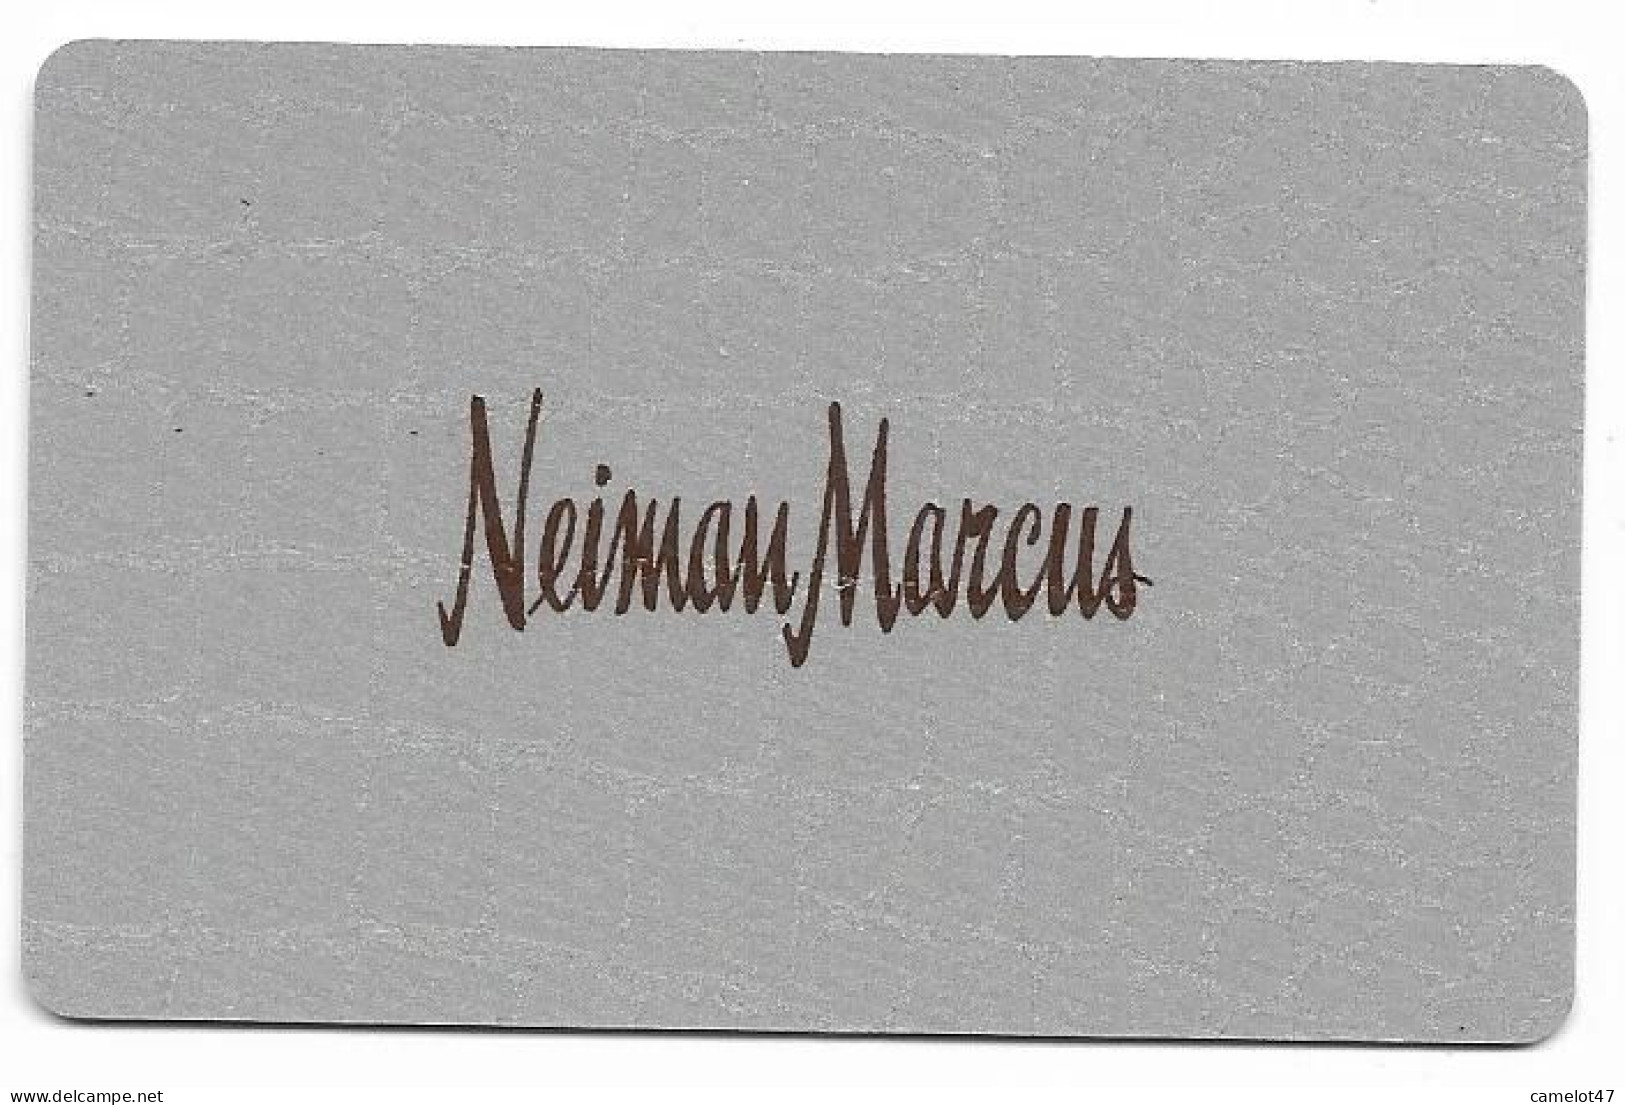 Neiman Marcus, U.S.A., Carte Cadeau Pour Collection, Sans Valeur, # Neiman-4 - Cartes De Fidélité Et Cadeau